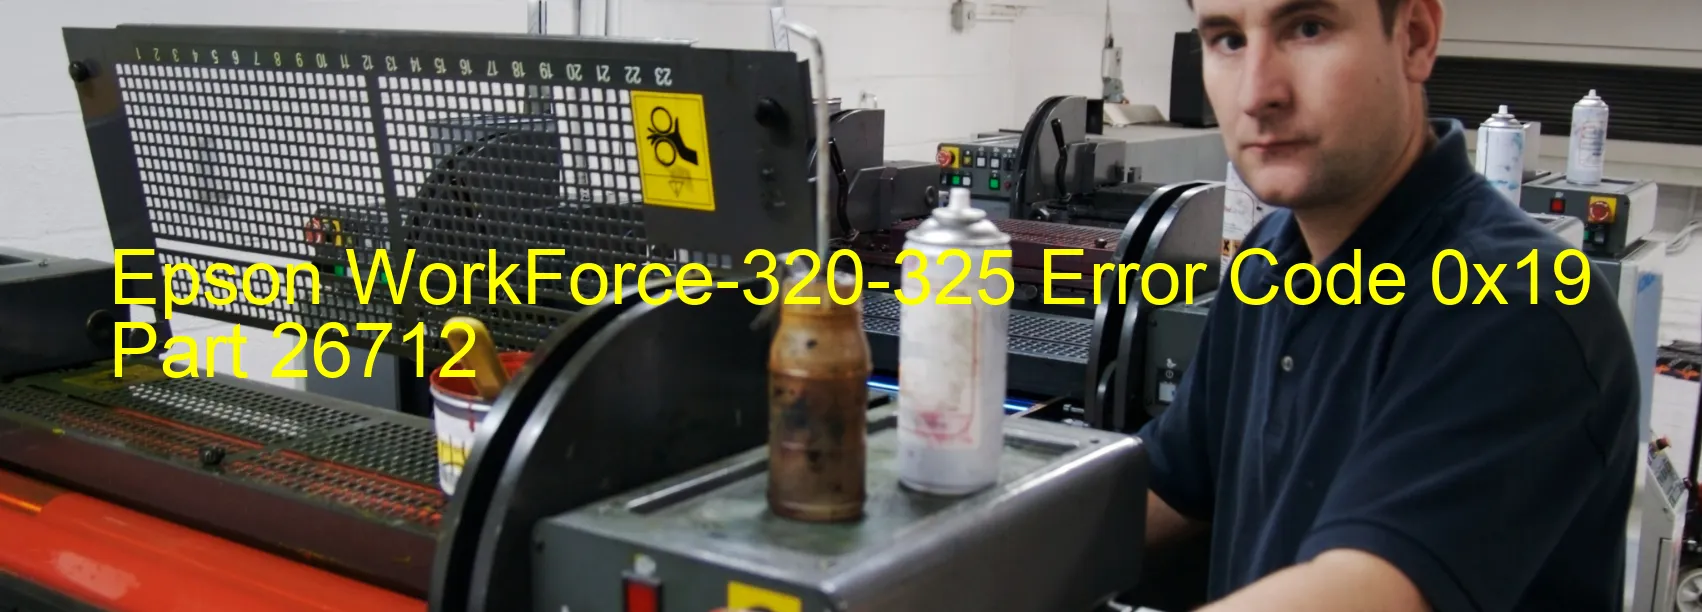 Epson WorkForce-320-325 Error Code 0x19 Part 26712